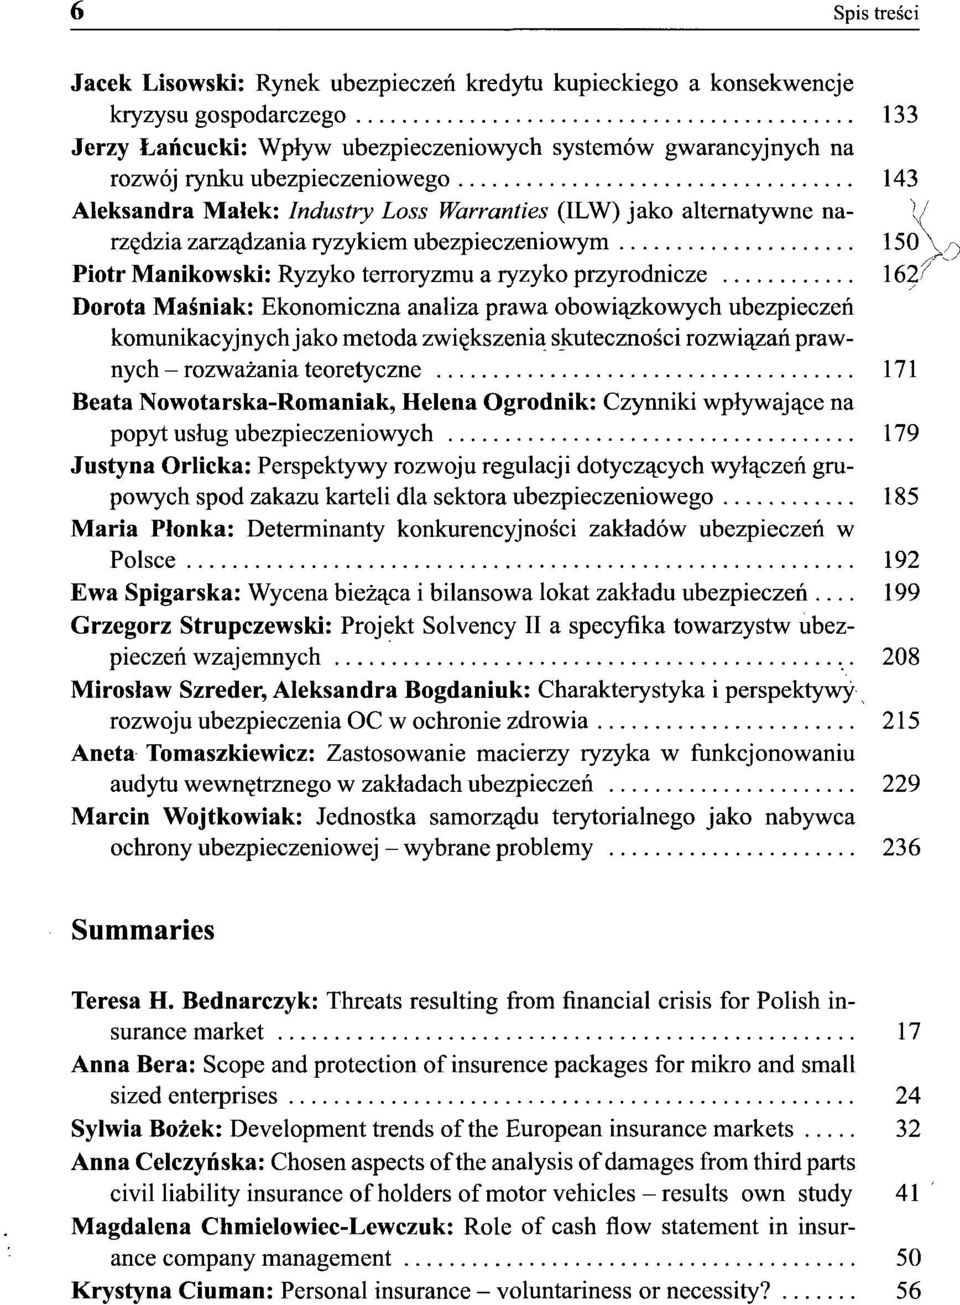 przyrodnicze 162/ Dorota Maśniak: Ekonomiczna analiza prawa obowiązkowych ubezpieczeń komunikacyjnych jako metoda zwiększenia skuteczności rozwiązań prawnych - rozważania teoretyczne 171 Beata